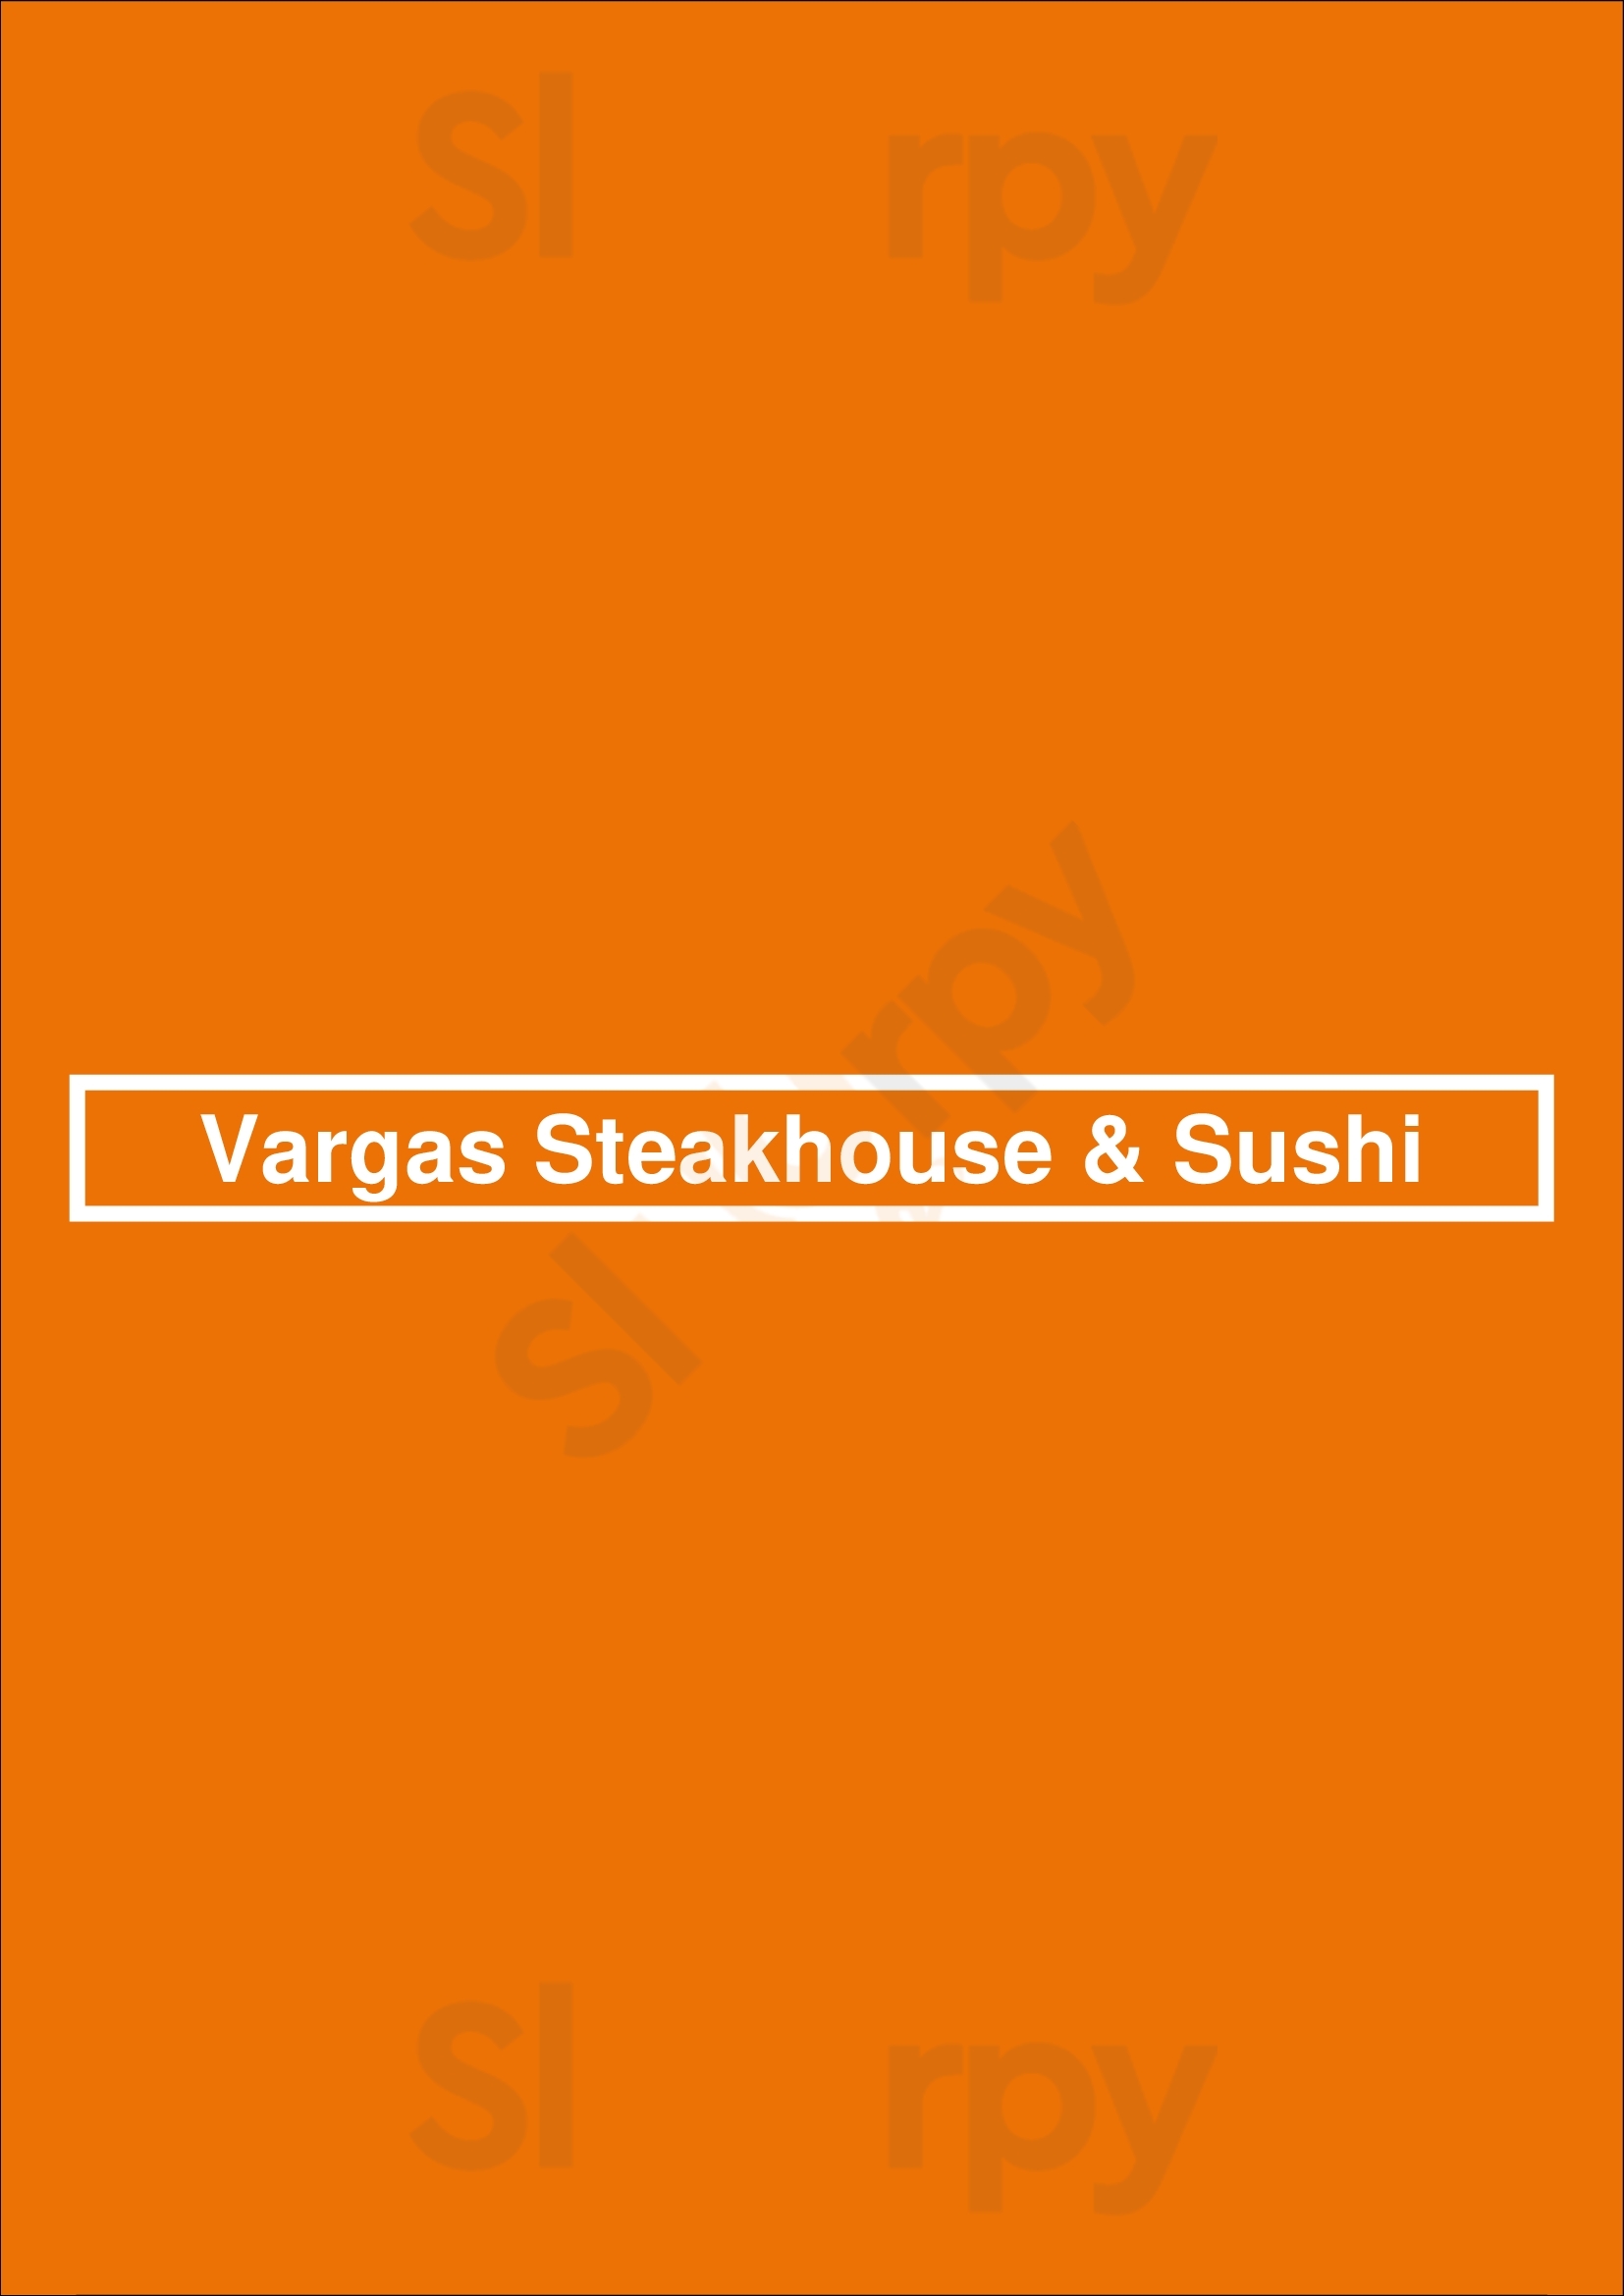 Vargas Steakhouse & Sushi Montreal Menu - 1